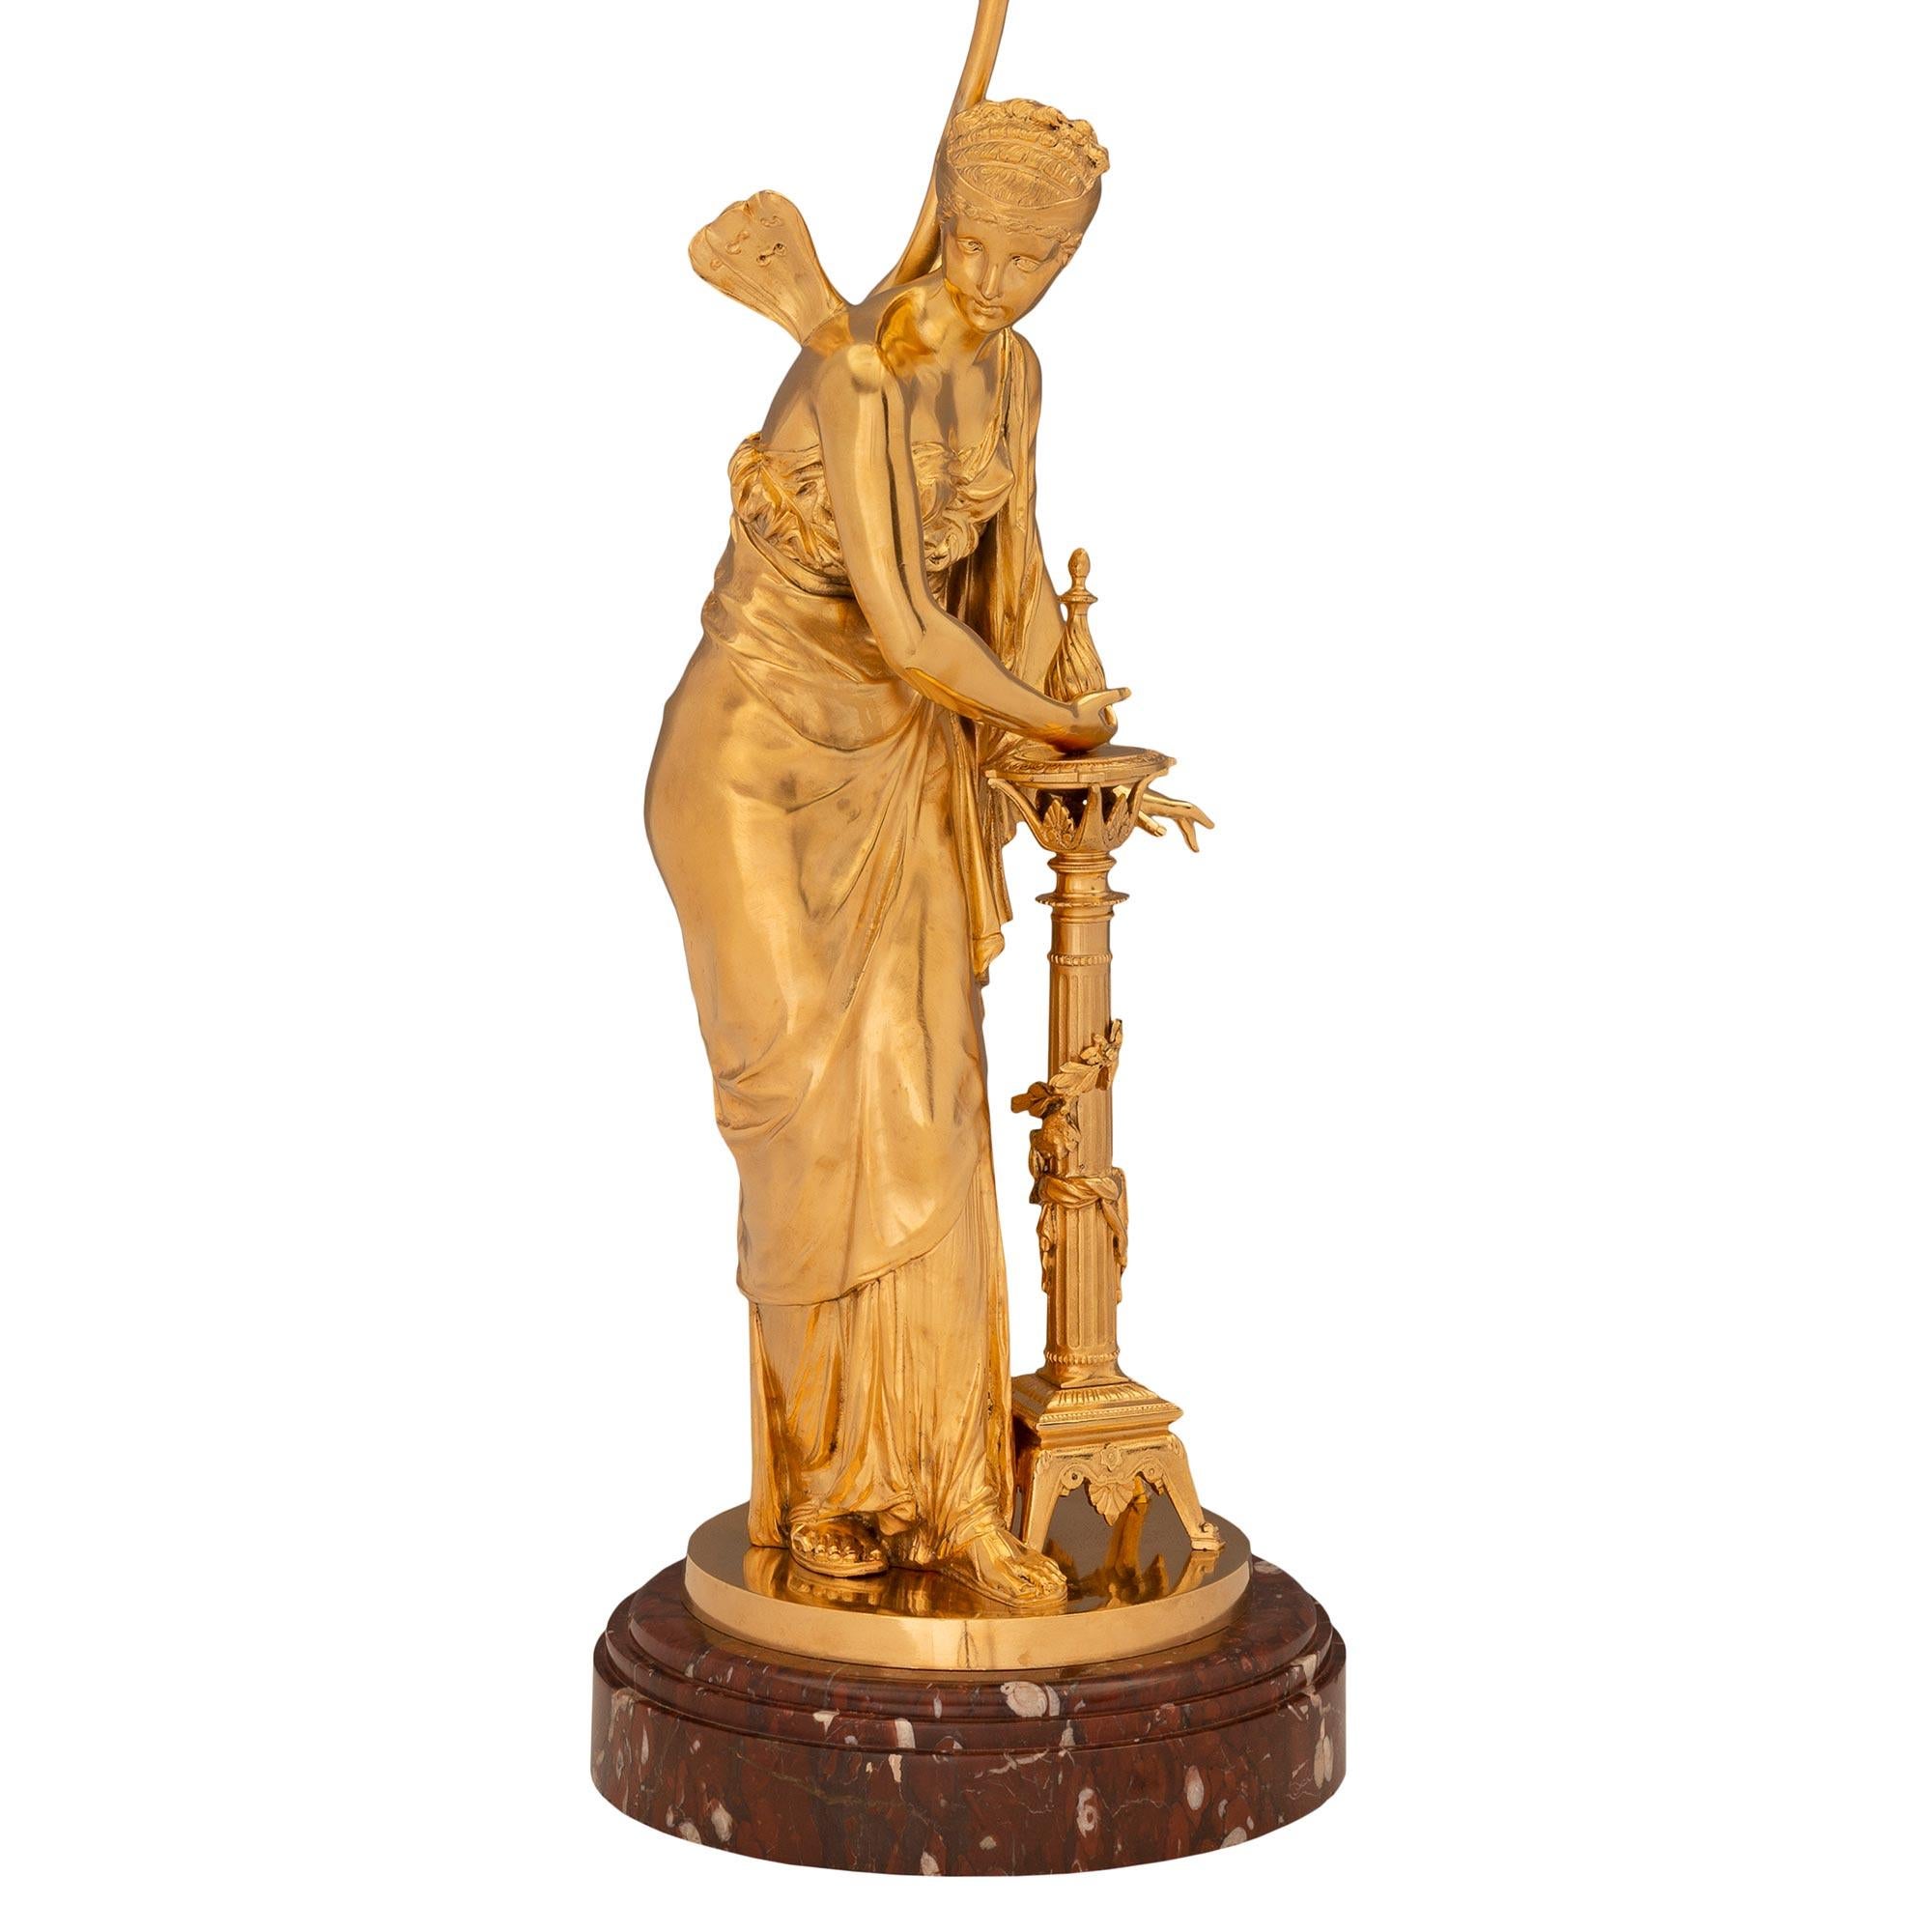 Une exceptionnelle et très charmante paire de lampes néo-classiques françaises du 19ème siècle en bronze doré et marbre Rouge Griotte. Chaque lampe est surélevée par son élégante base circulaire d'origine en marbre Rouge Griotte avec un fin